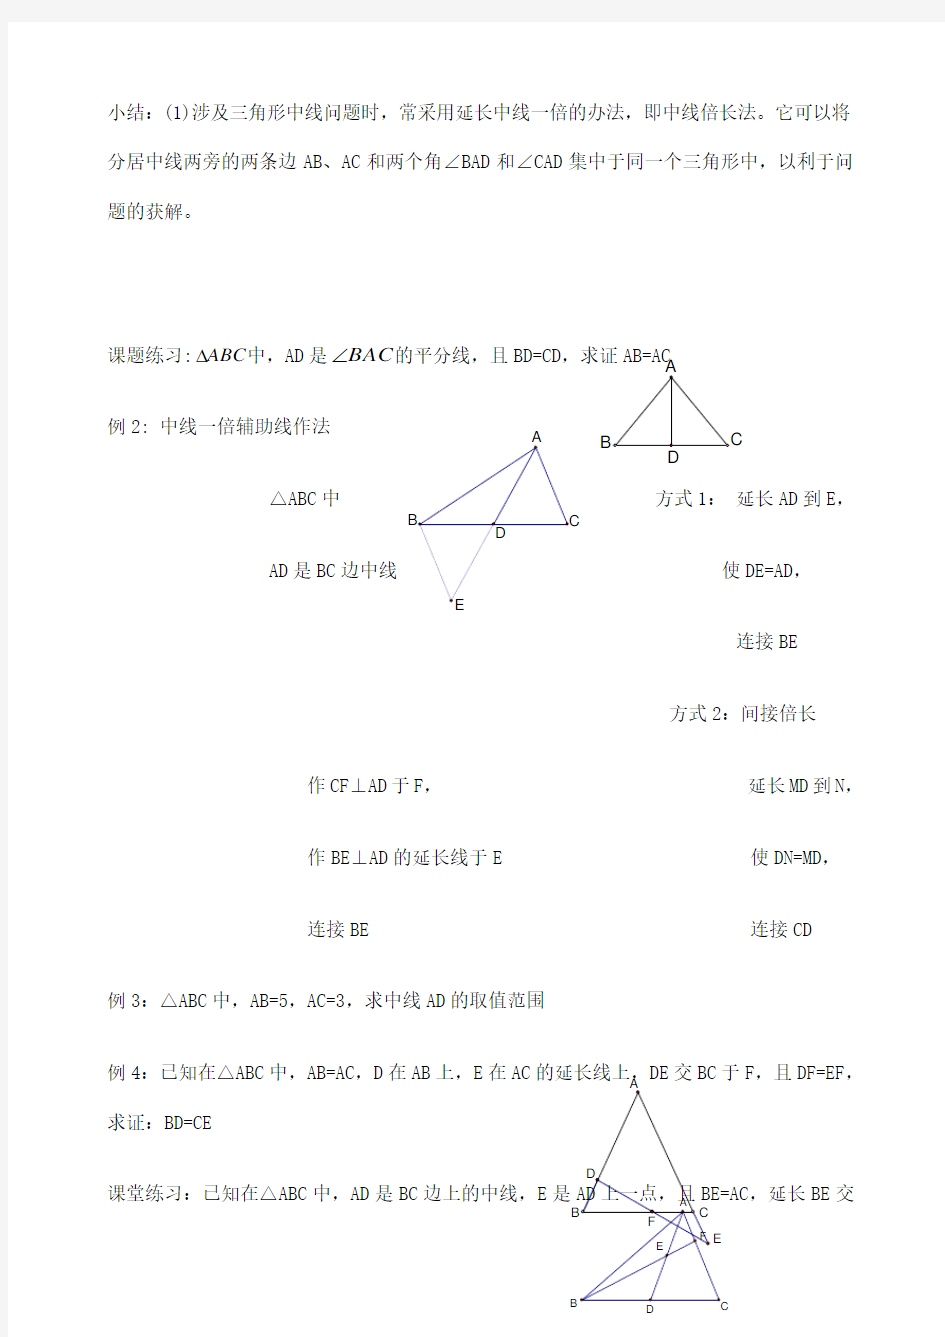 全等三角形几何证明常用辅助线